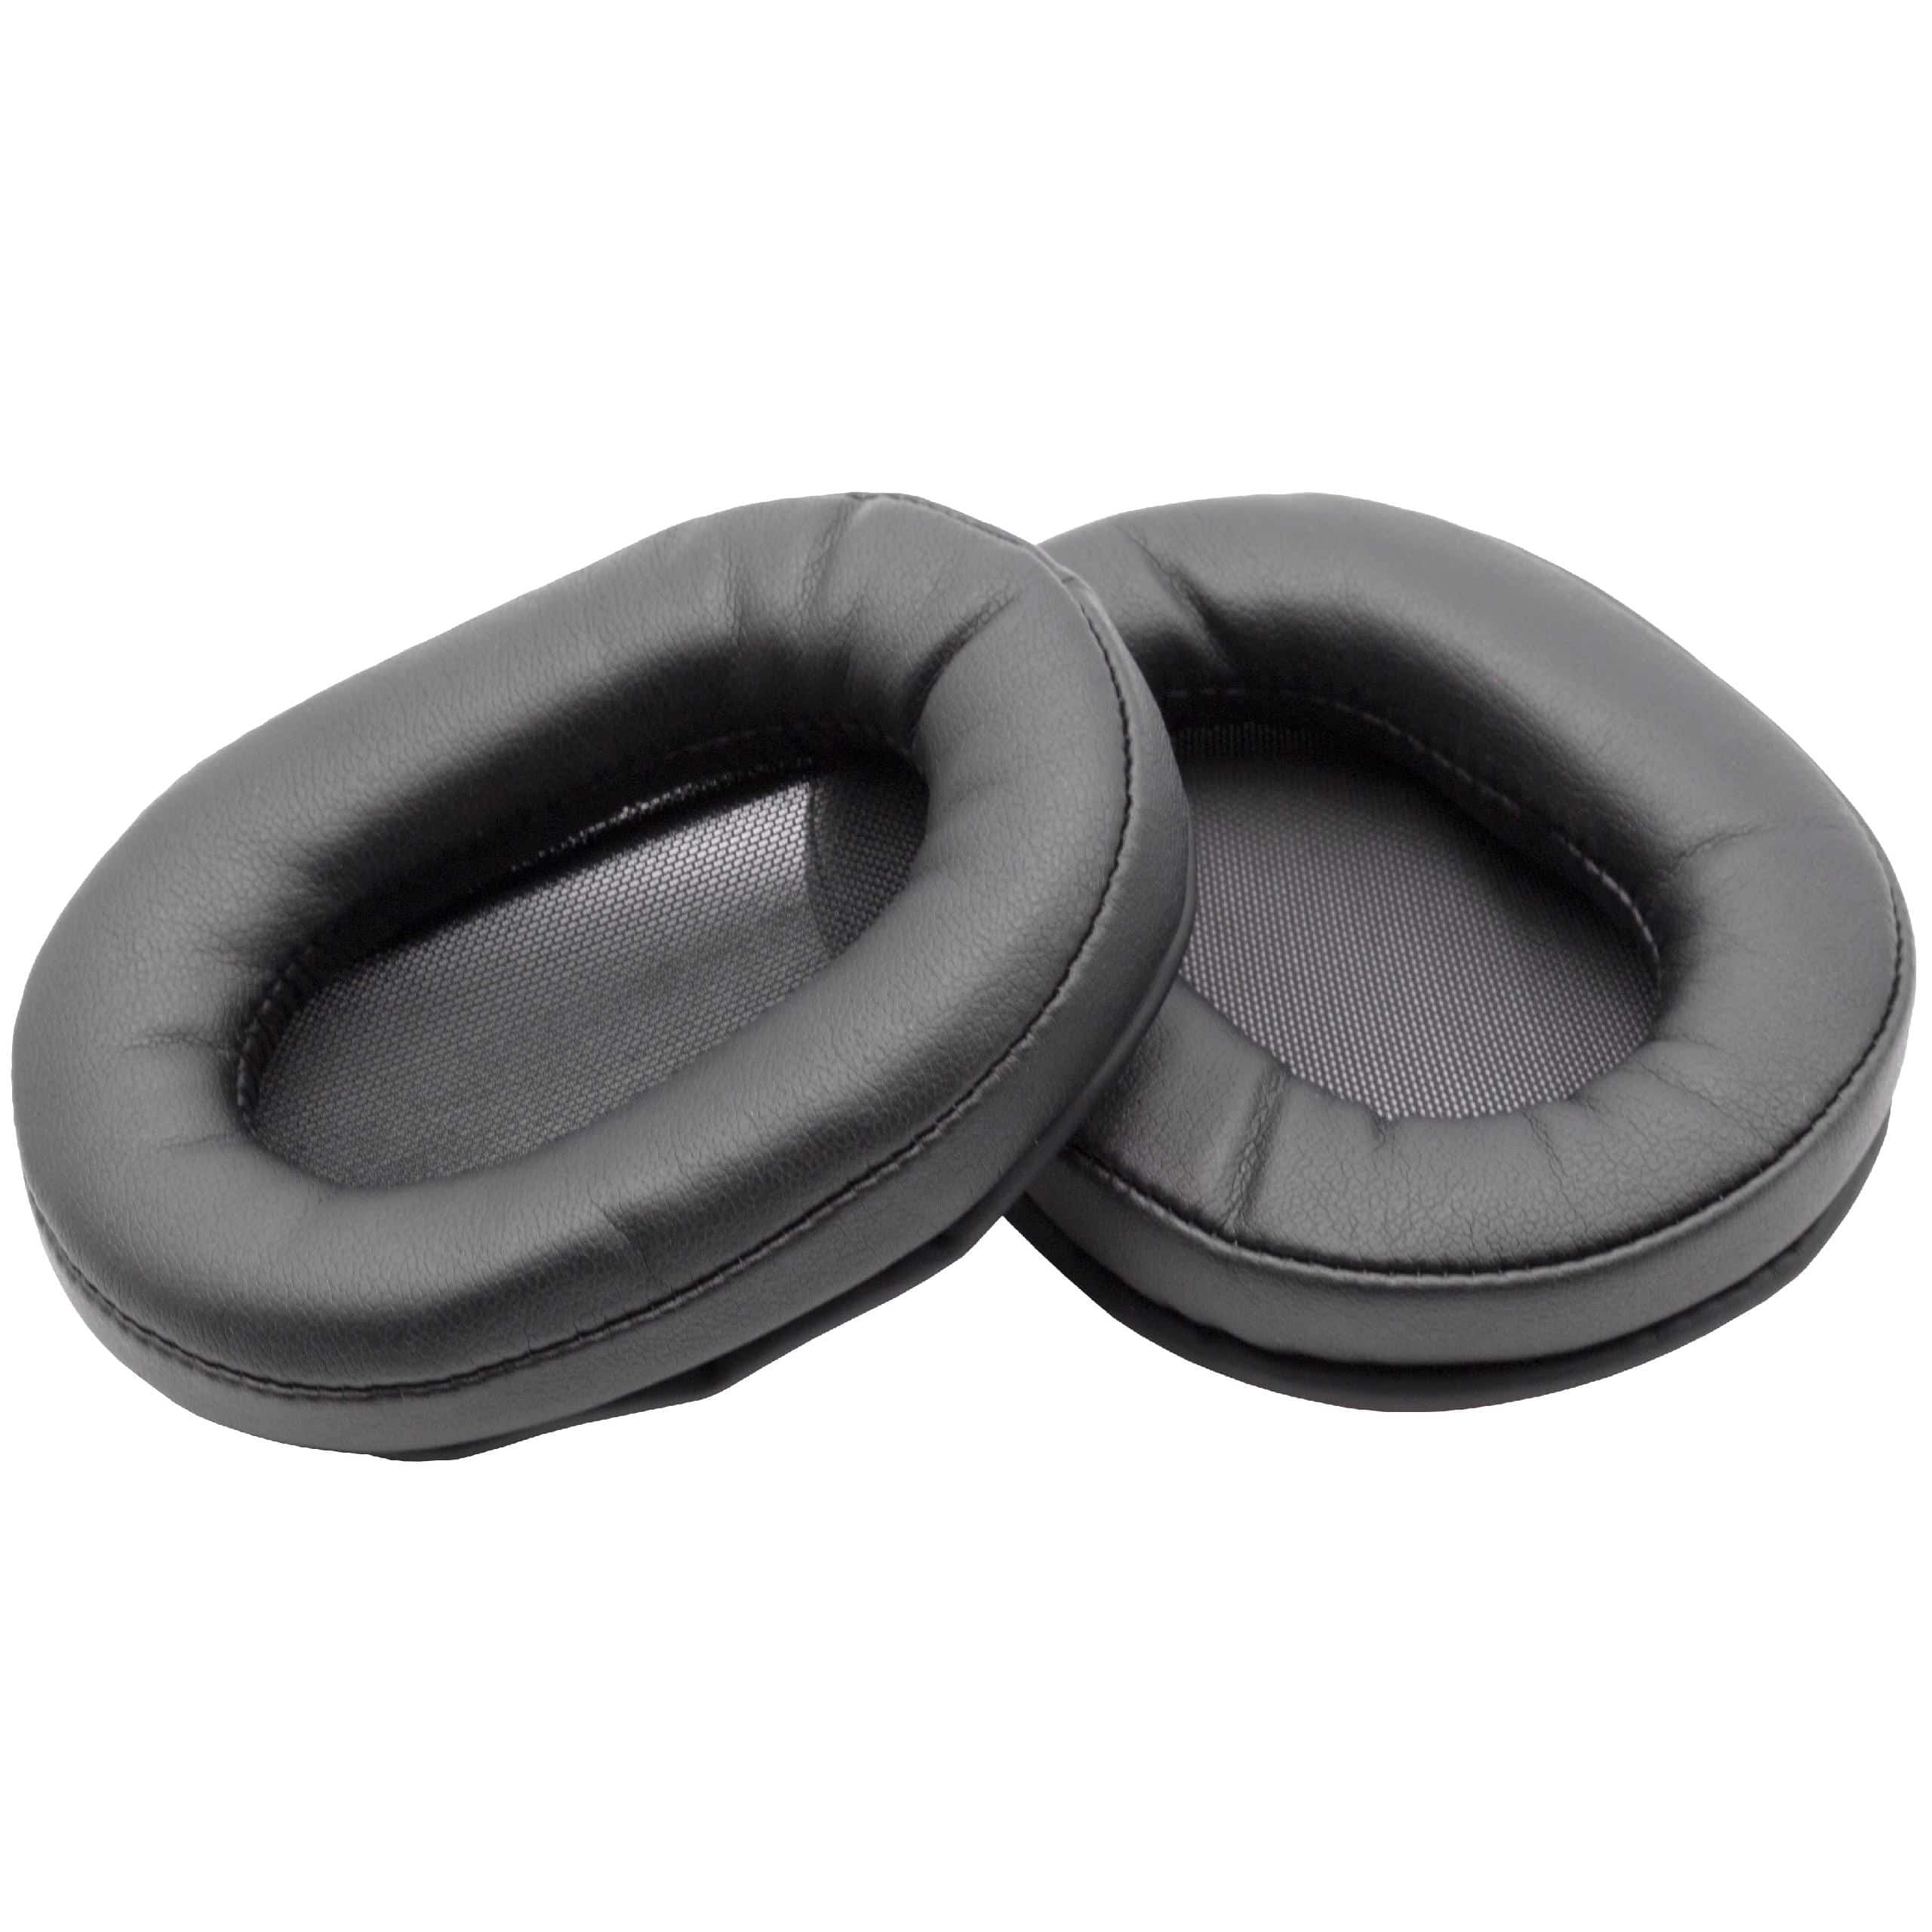 Ohrenpolster passend für Sony MDR-1R Kopfhörer u.a. - Polyurethan / Schaumstoff, 9,0 x 6,9 cm, 17 mm stark, Sc